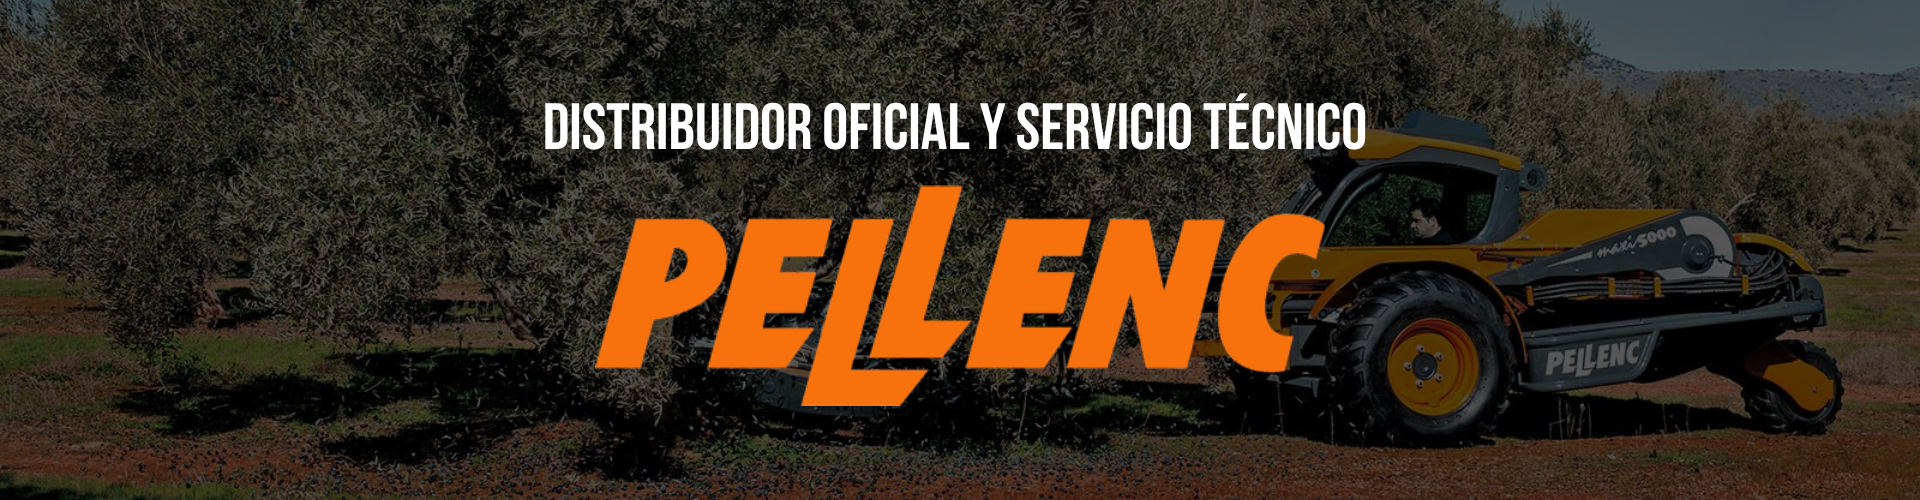 Distribuidor oficial y servicio técnico Pellenc